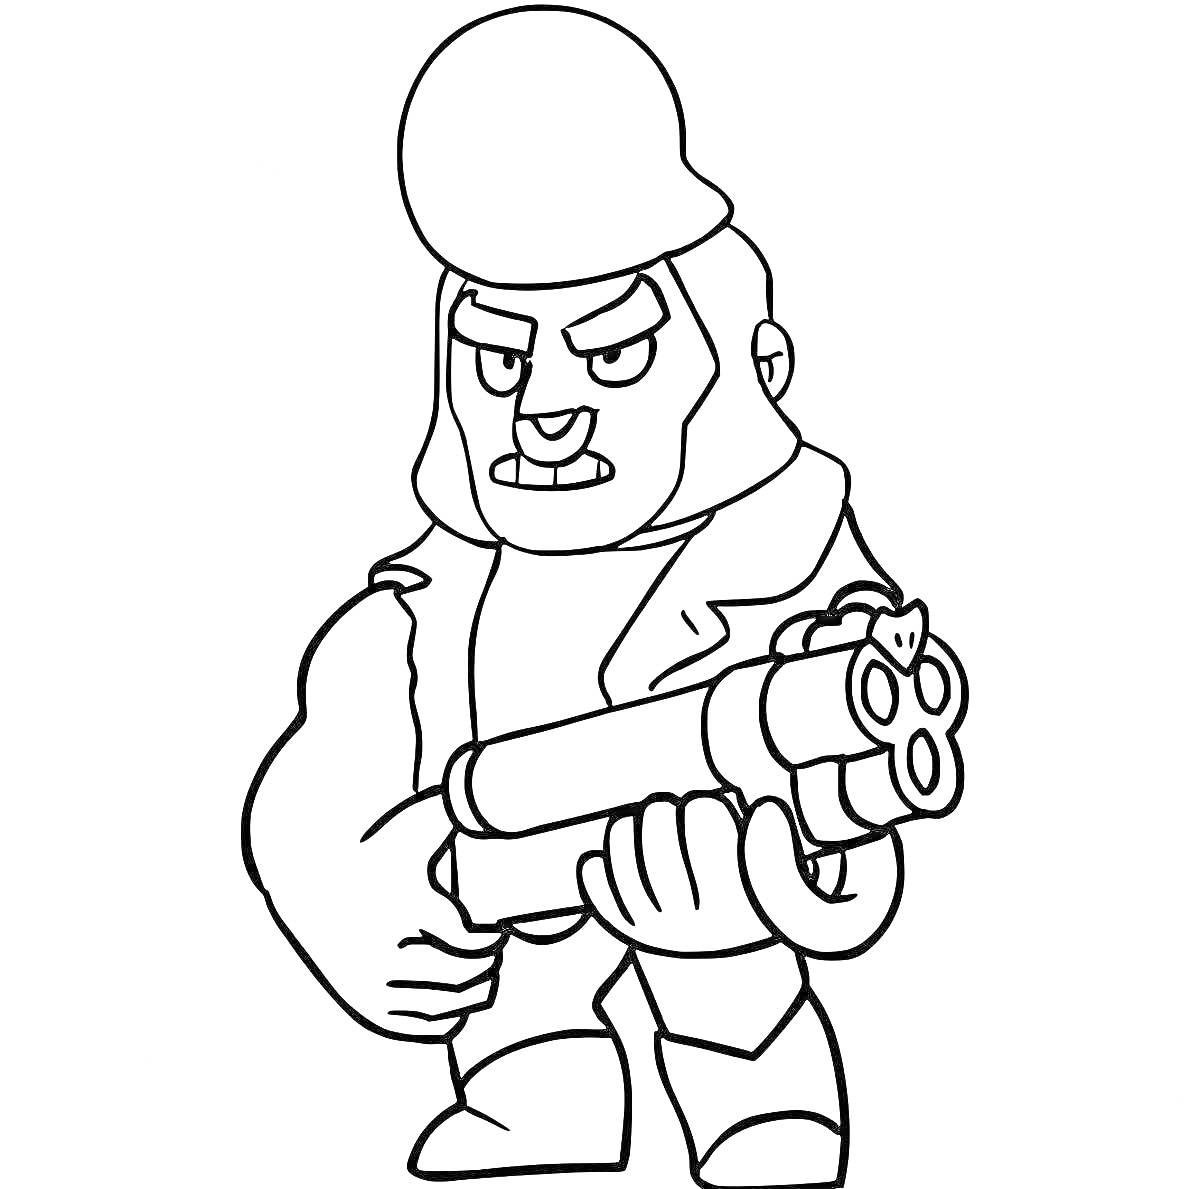 Персонаж из игры Бравл Старс с пистолетом